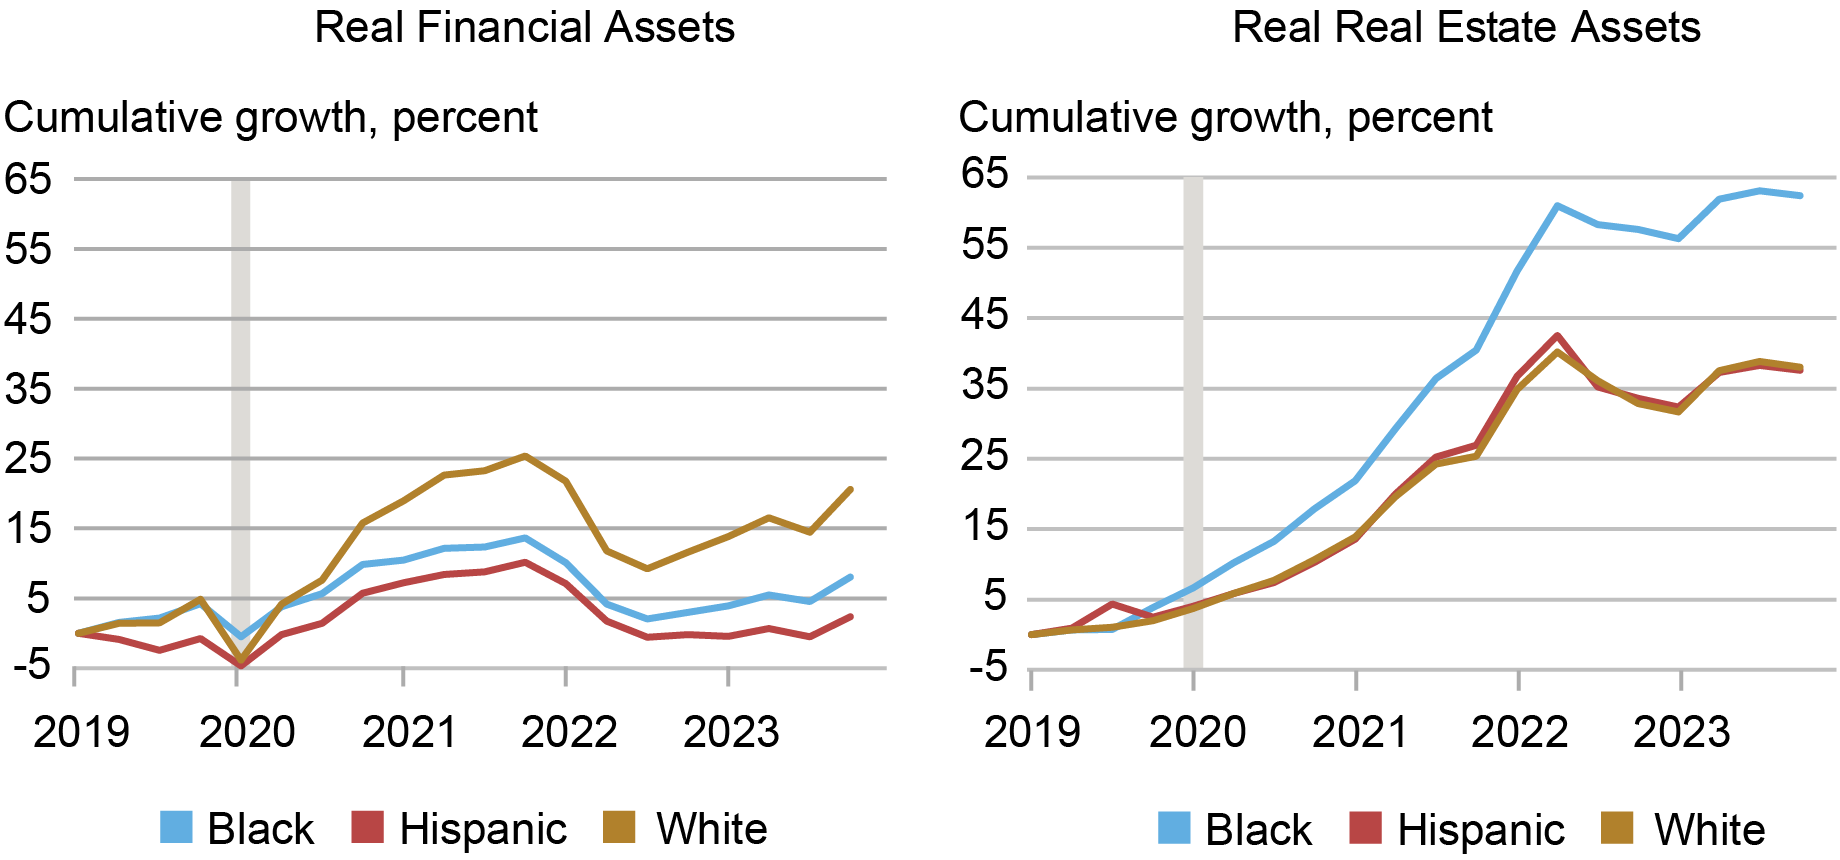 Alt=”gráficos de duas linhas: à esquerda, rastreando o crescimento de ativos financeiros por porcentagem de 2019 a 2023 para famílias negras (azul), hispânicas (vermelha) e brancas (ouro); à direita, rastreando o crescimento de ativos imobiliários por porcentagem de 2019 a 2023 para famílias negras (azul), hispânicas (vermelha) e brancas (ouro)” 